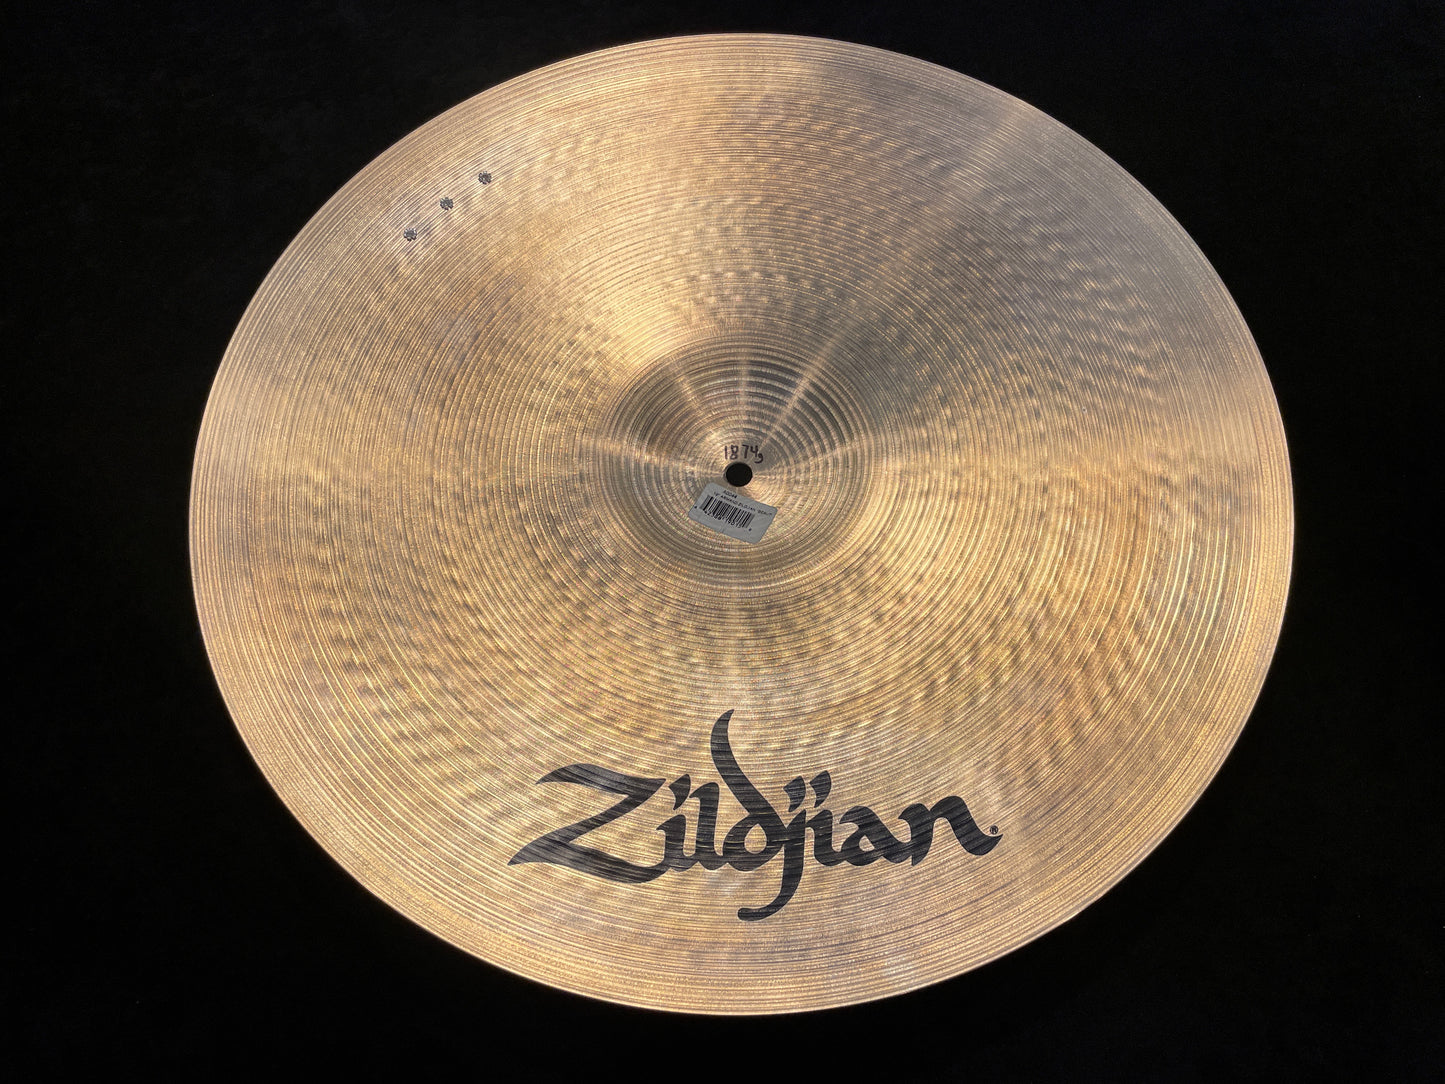 19" Zildjian Armand Beautiful Baby Ride Cymbal 1874g *Video Demo*